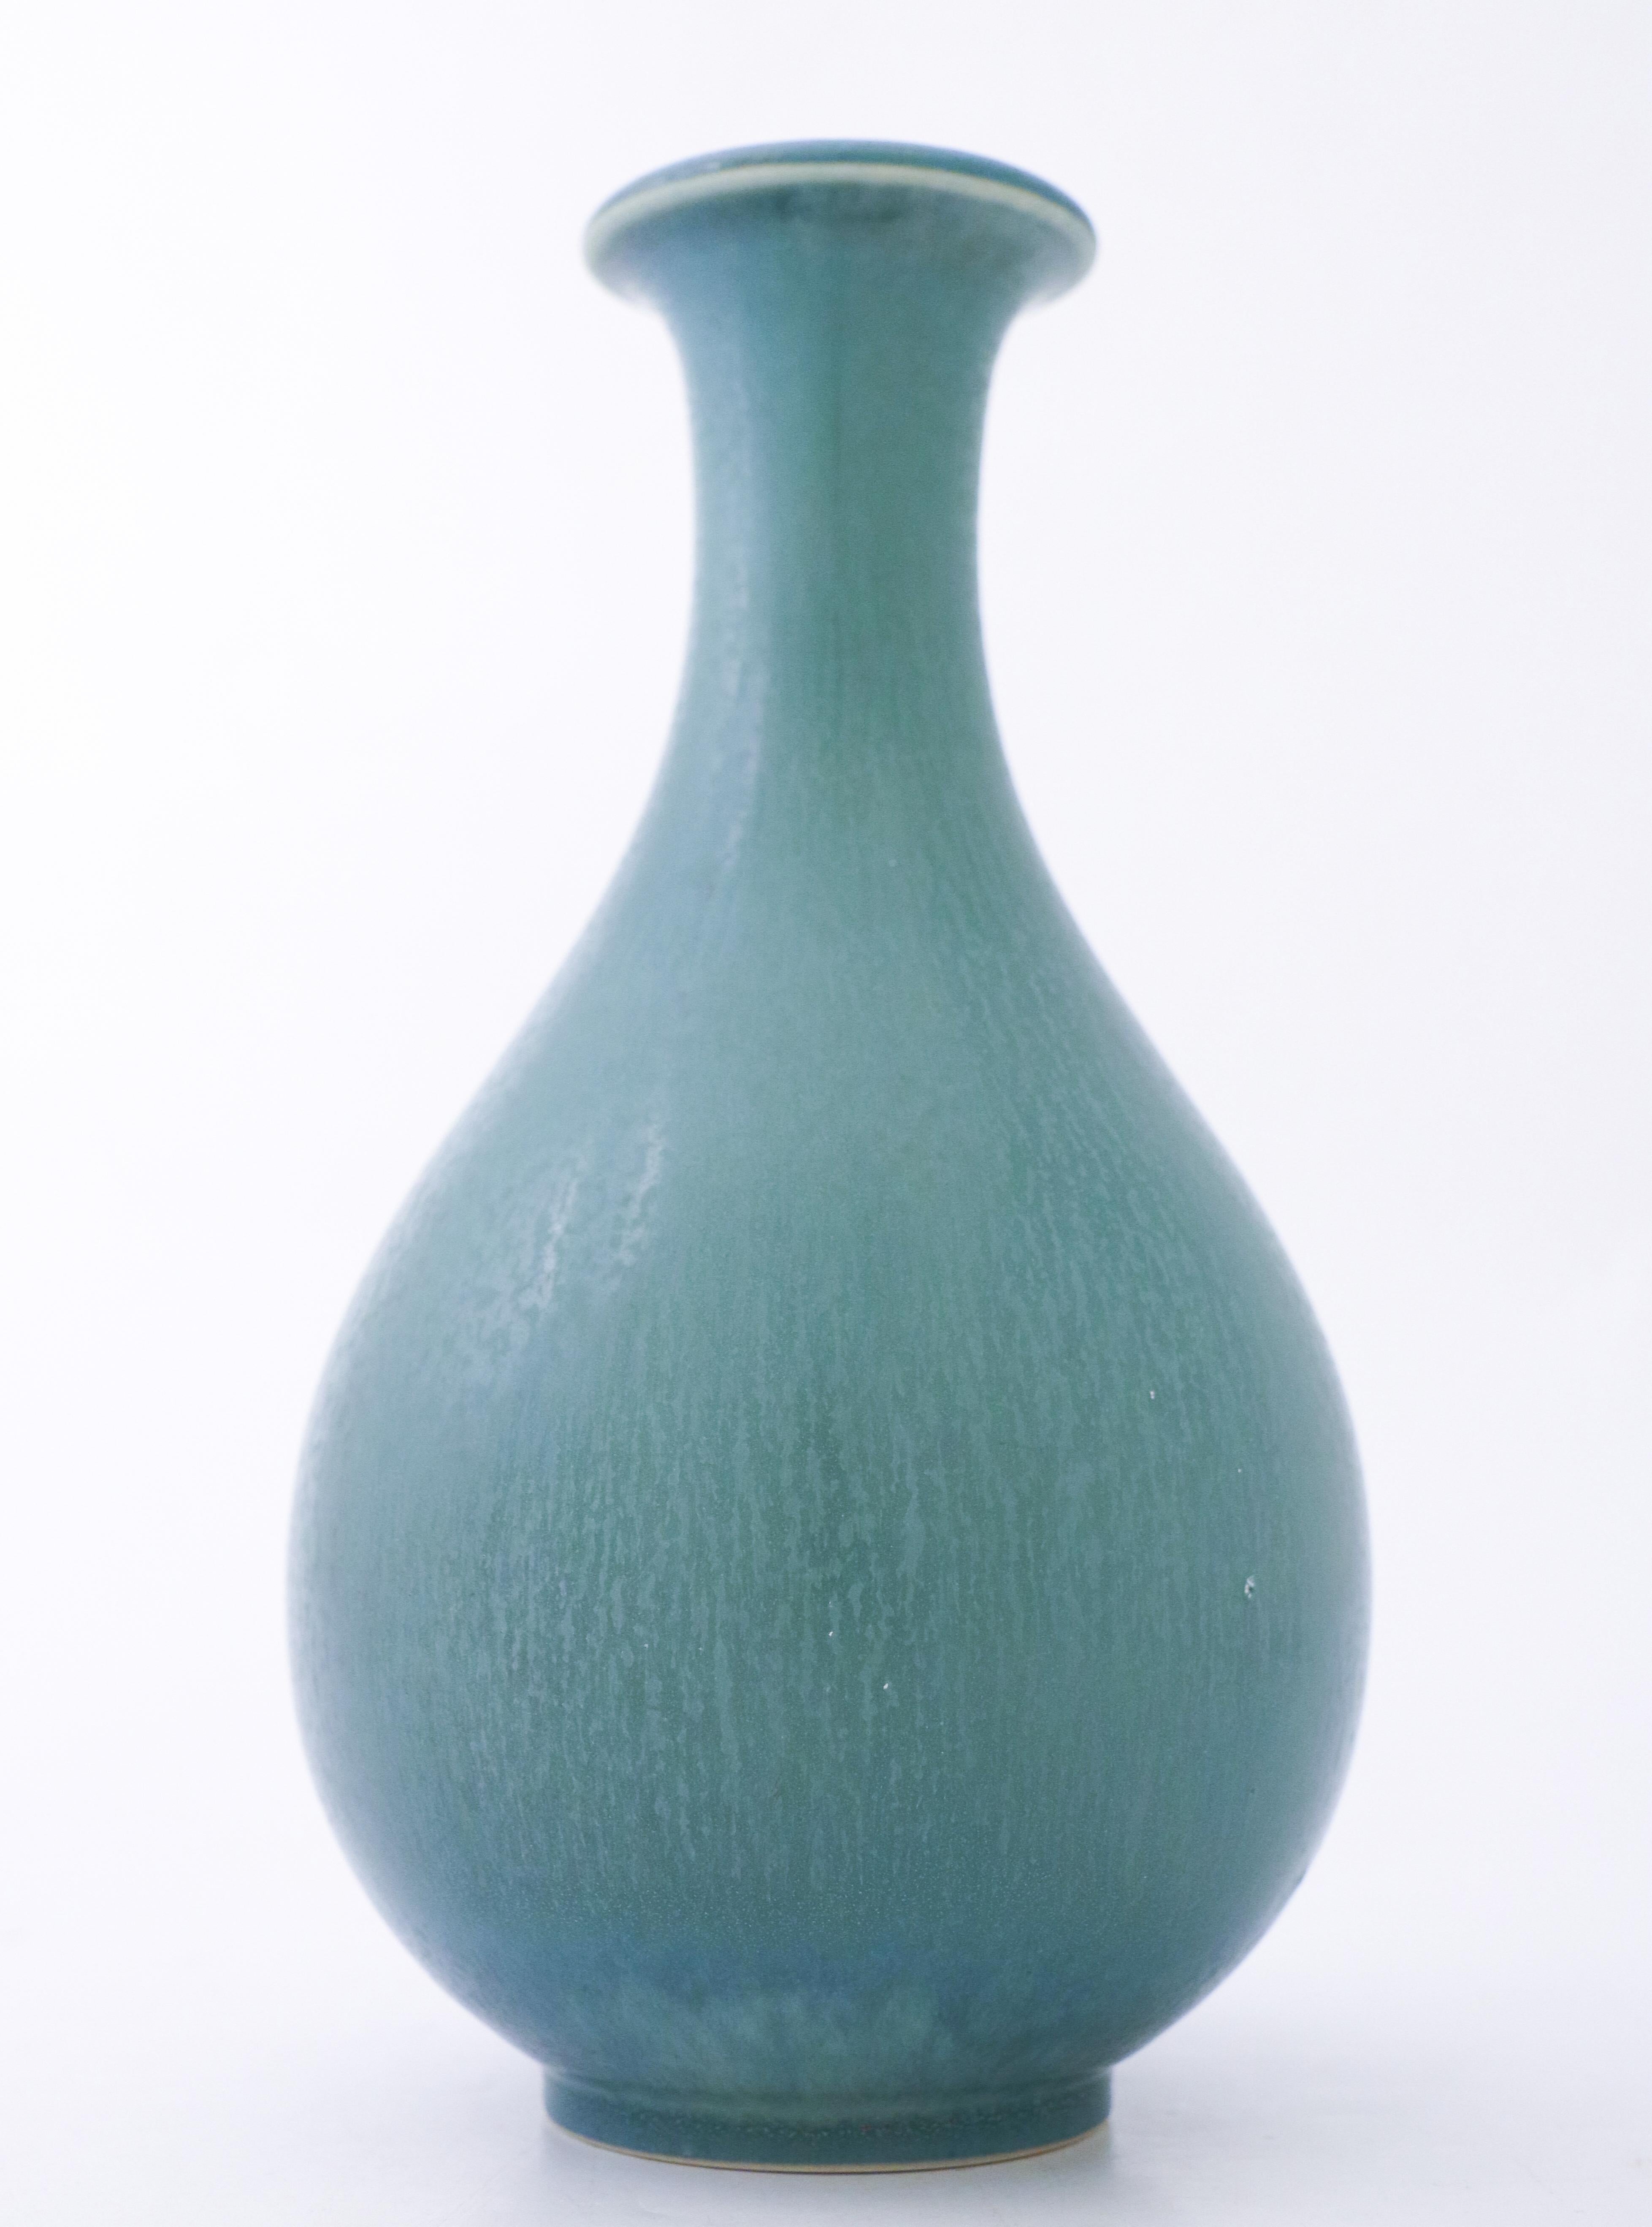 Eine türkisfarbene Vase mit einer schönen HAR-Fellglasur, entworfen von Gunnar Nylund in Rörstrand, 24,5 cm (9,8) hoch. Es ist in ausgezeichnetem Zustand, abgesehen von einigen kleinen Flecken in der Glasur, und als 1. Qualität gekennzeichnet.